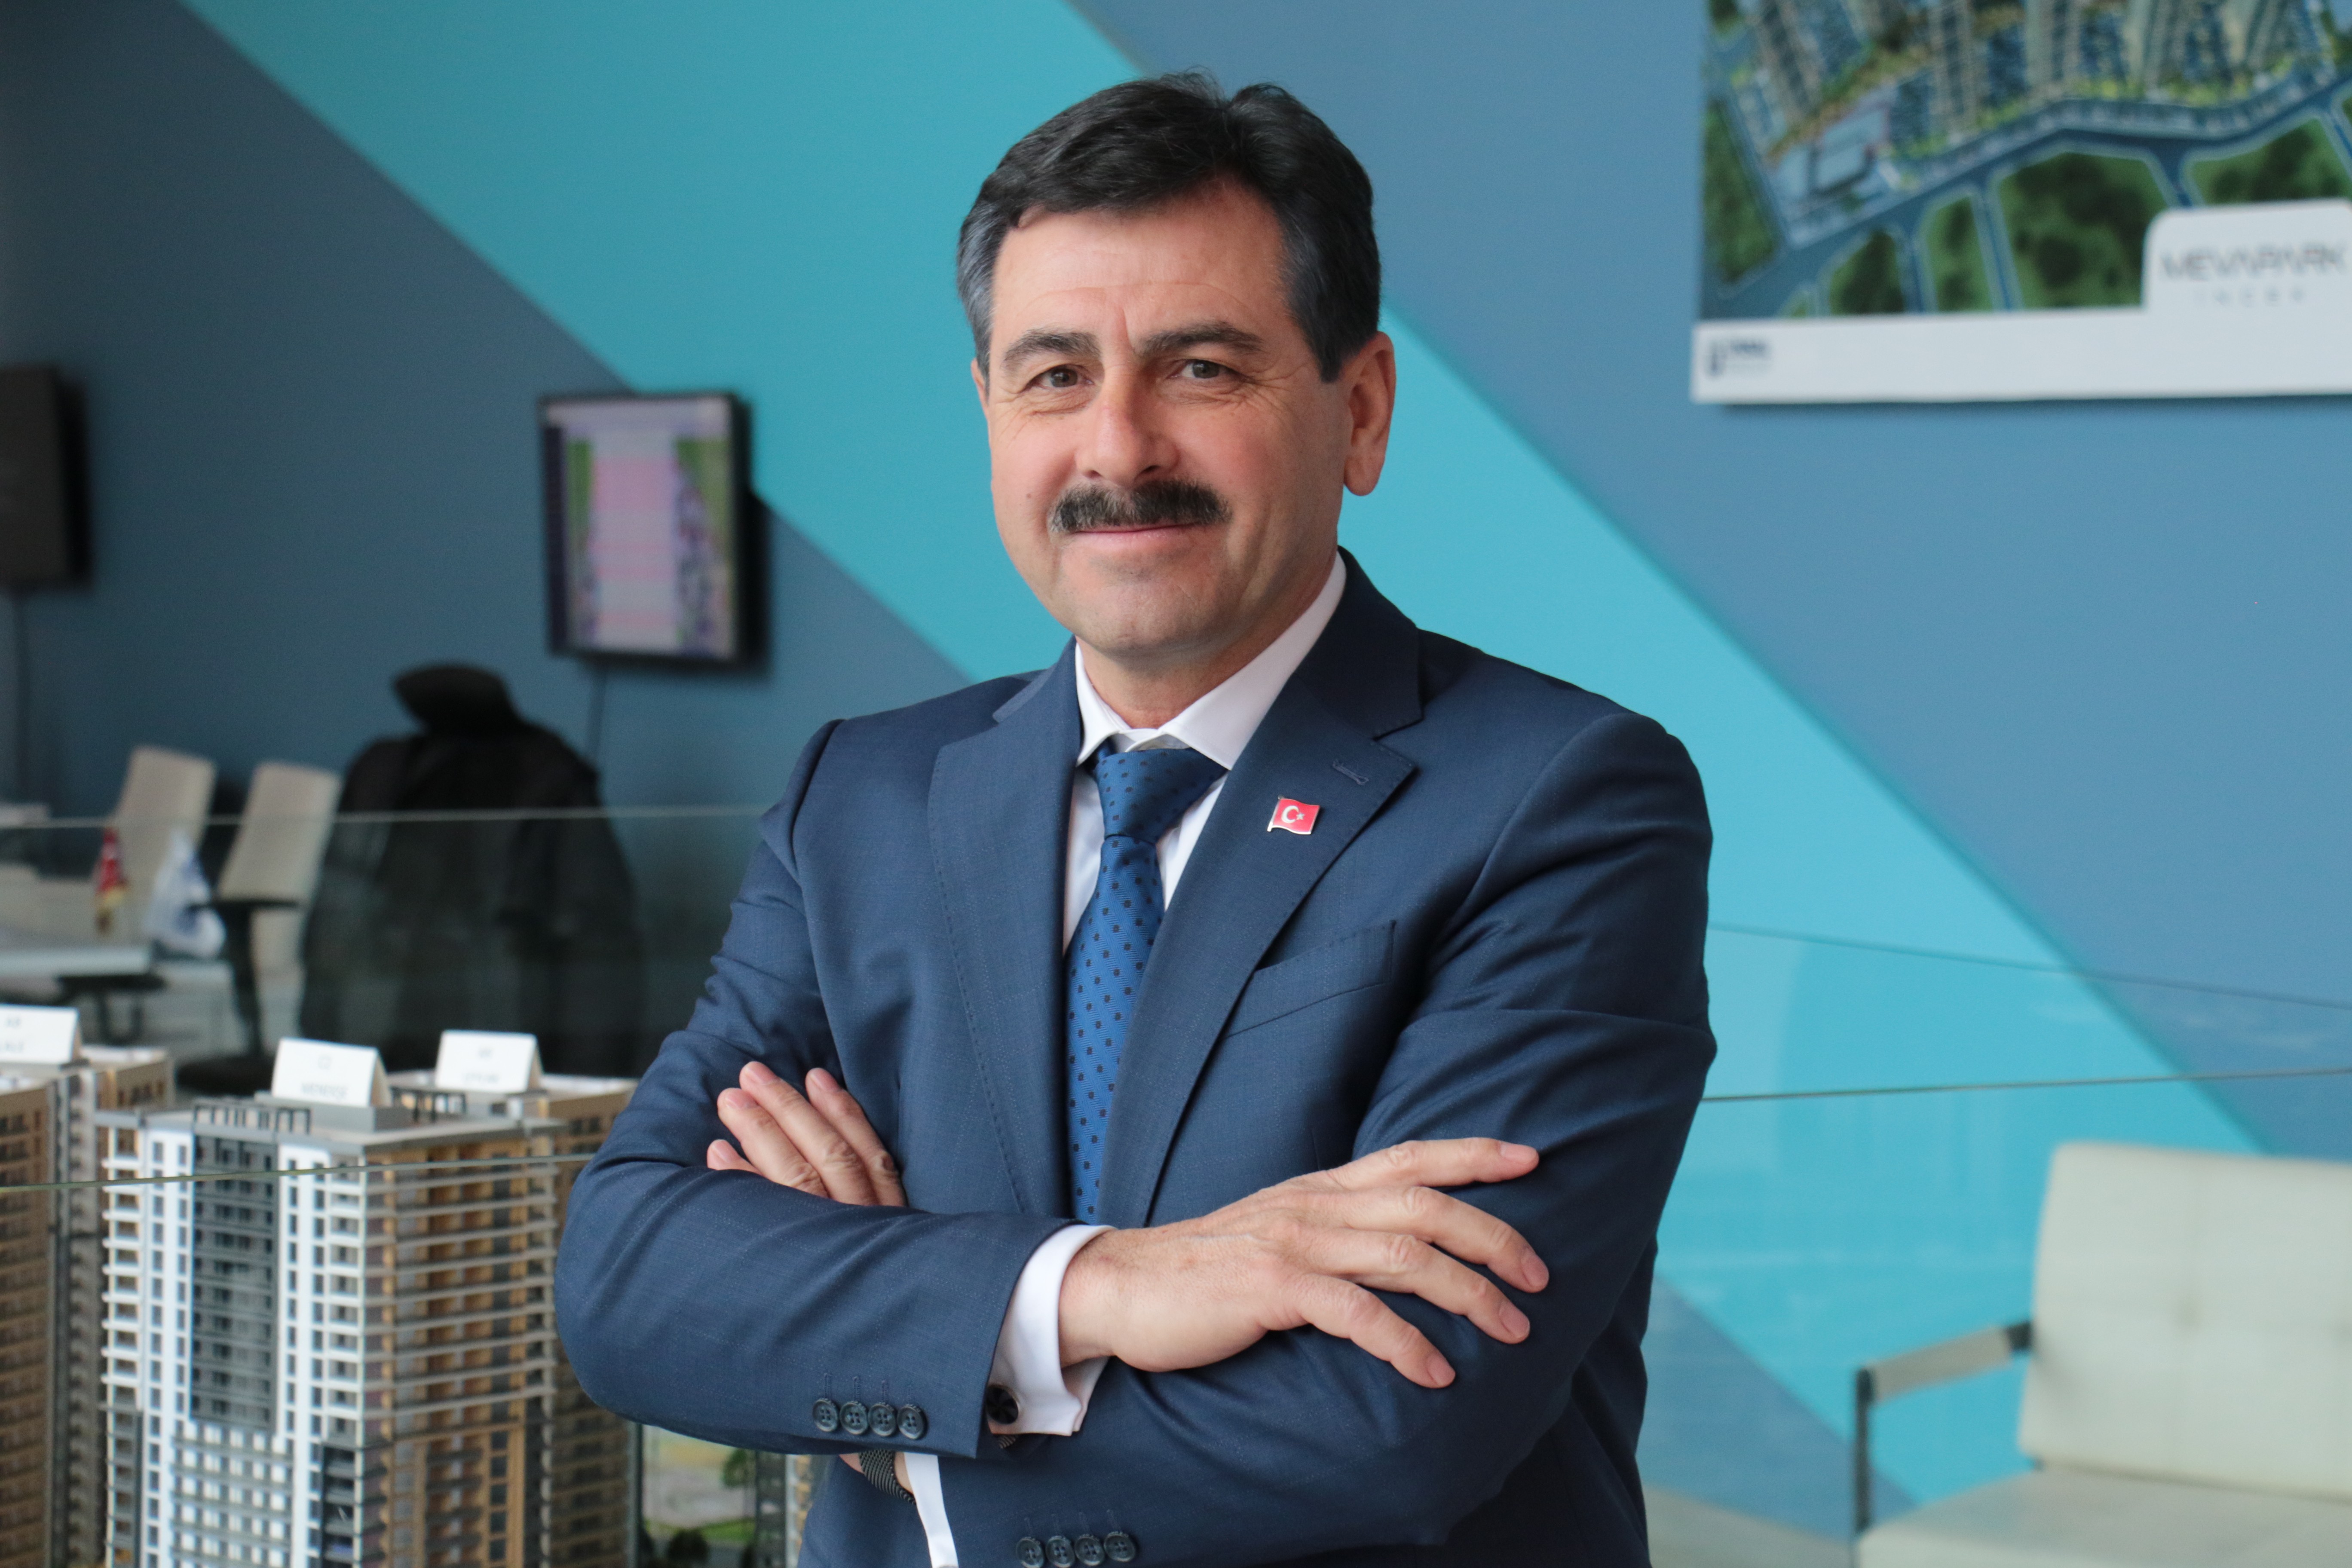 Ünsal Group Yönetim Kurulu Başkanı Orhan Ünsal: “Yeni Evim Projesi ülkemiz için milletimiz için hayırlı olacaktır”-1125 etkinliği yapıldı